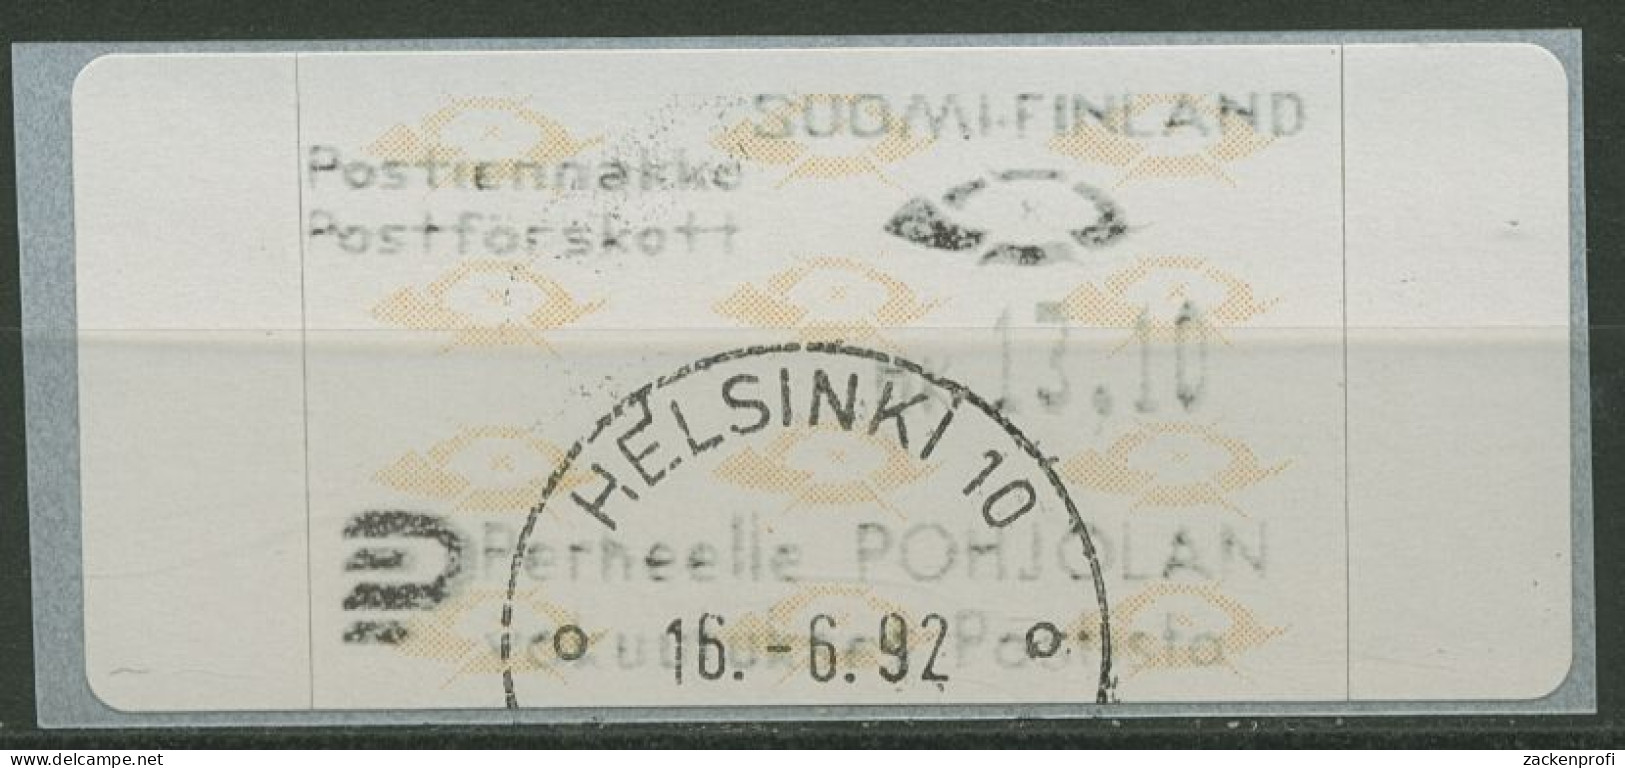 Finnland Automatenmarken 1992 Posthörner Einzelwert ATM 12.3 Z5 Gestempelt - Vignette [ATM]